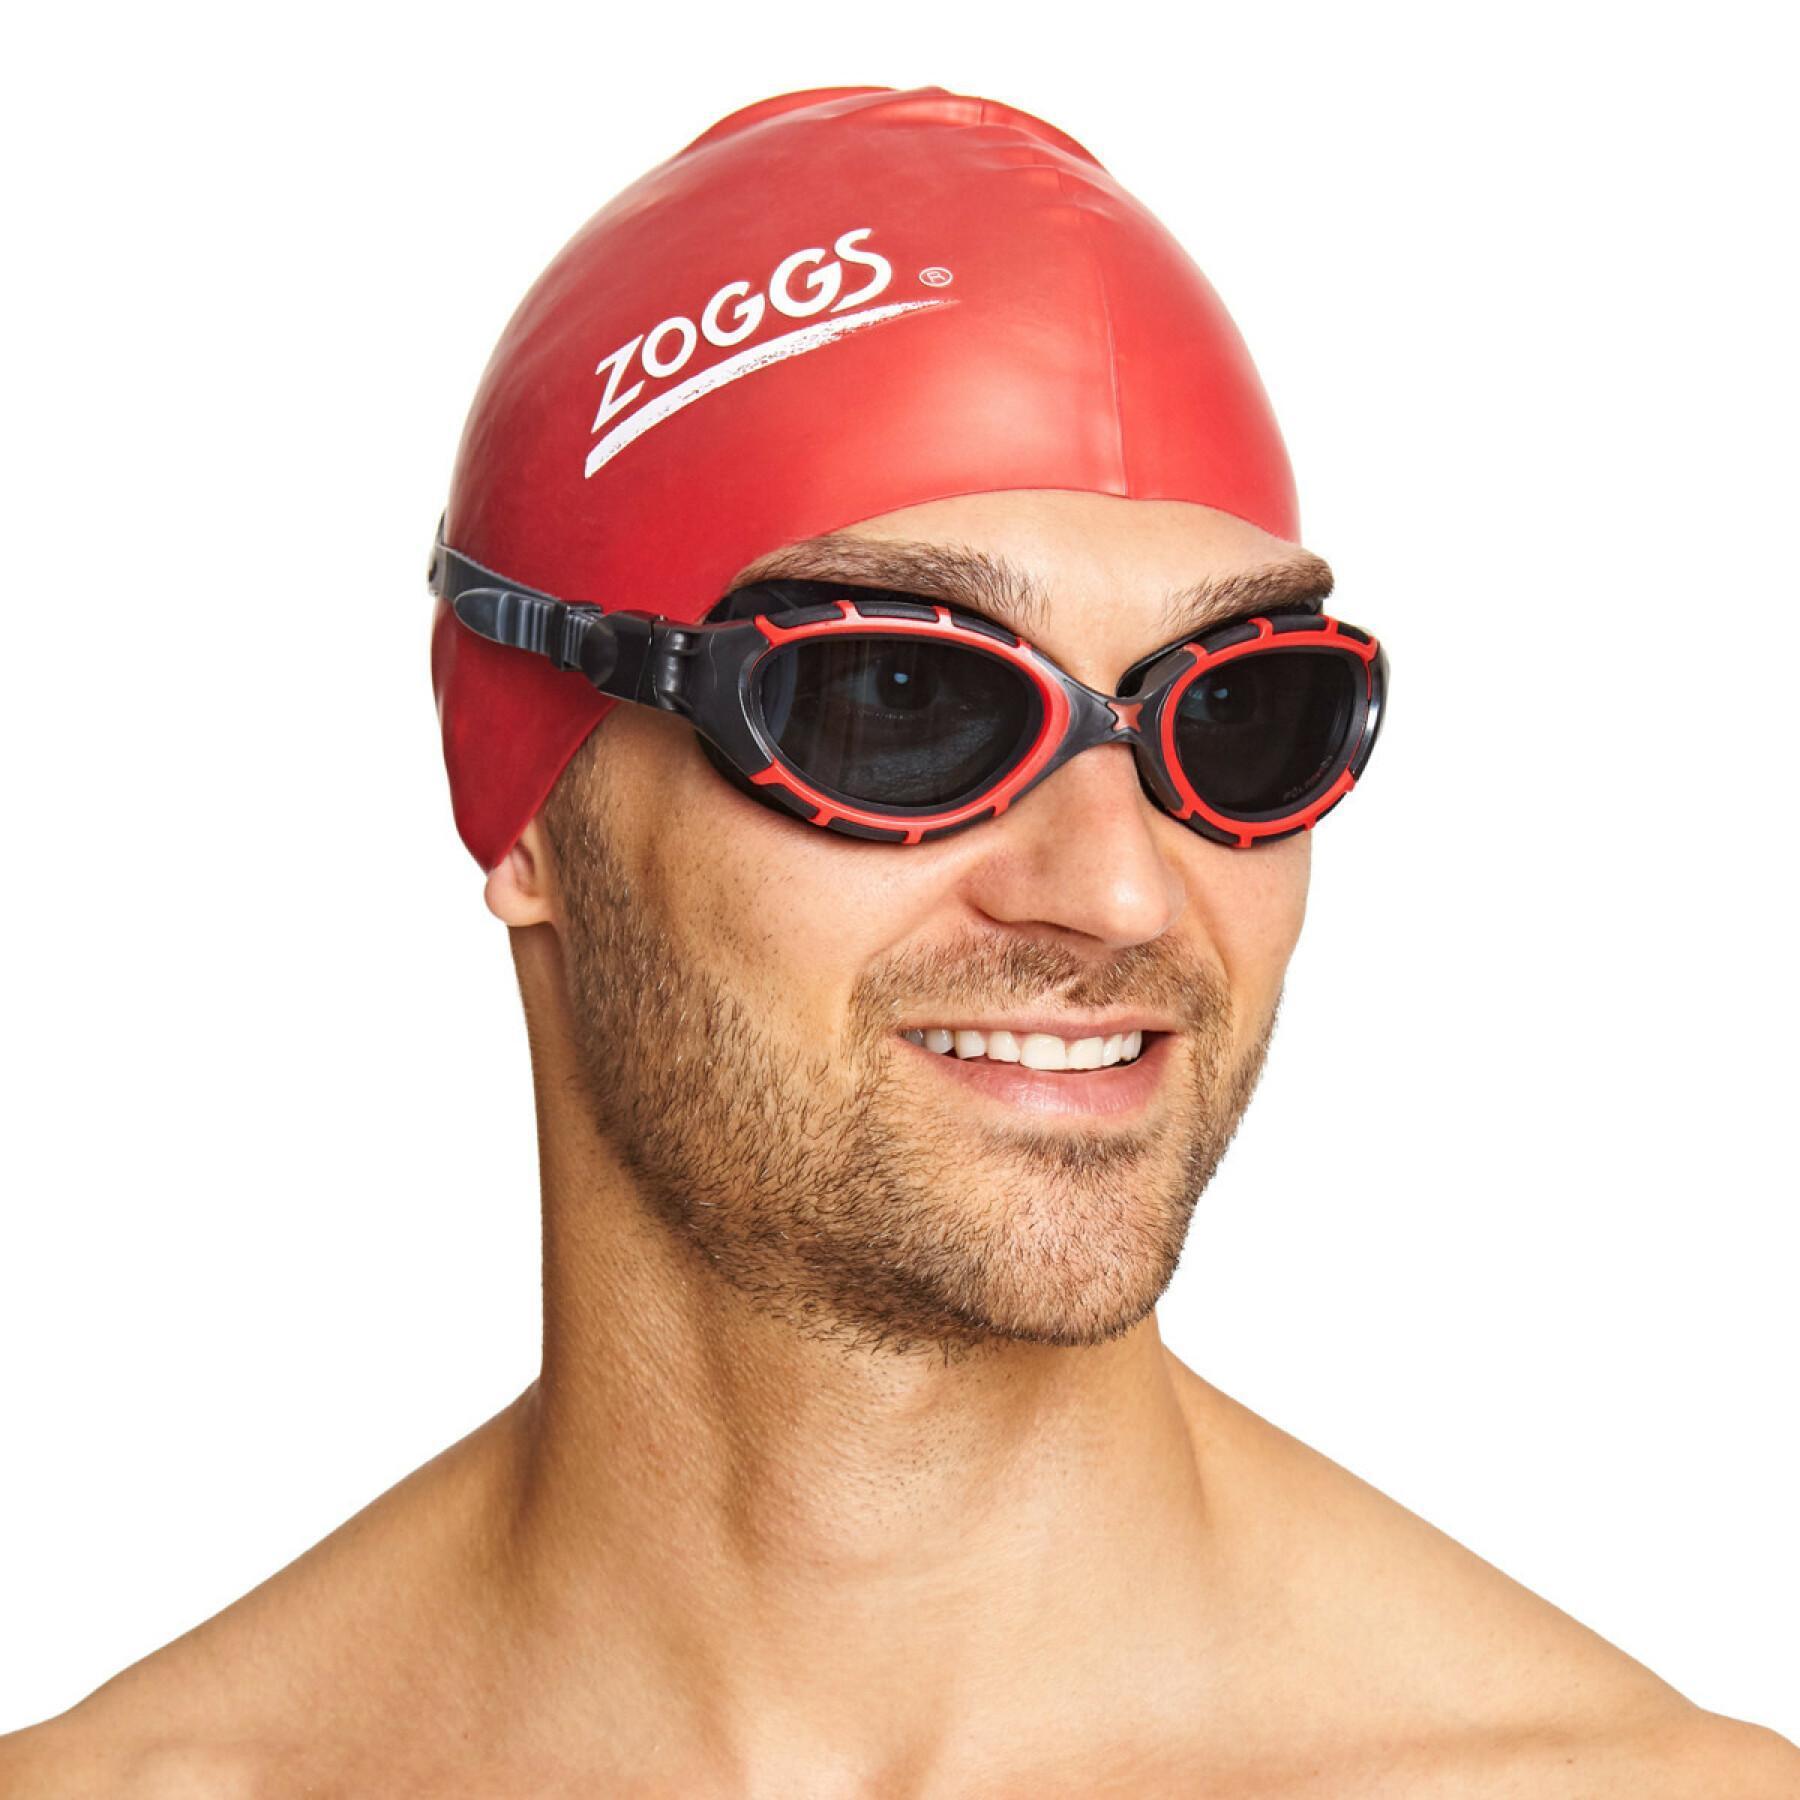 Gafas de natación polarizadas Zoggs Predator Flex